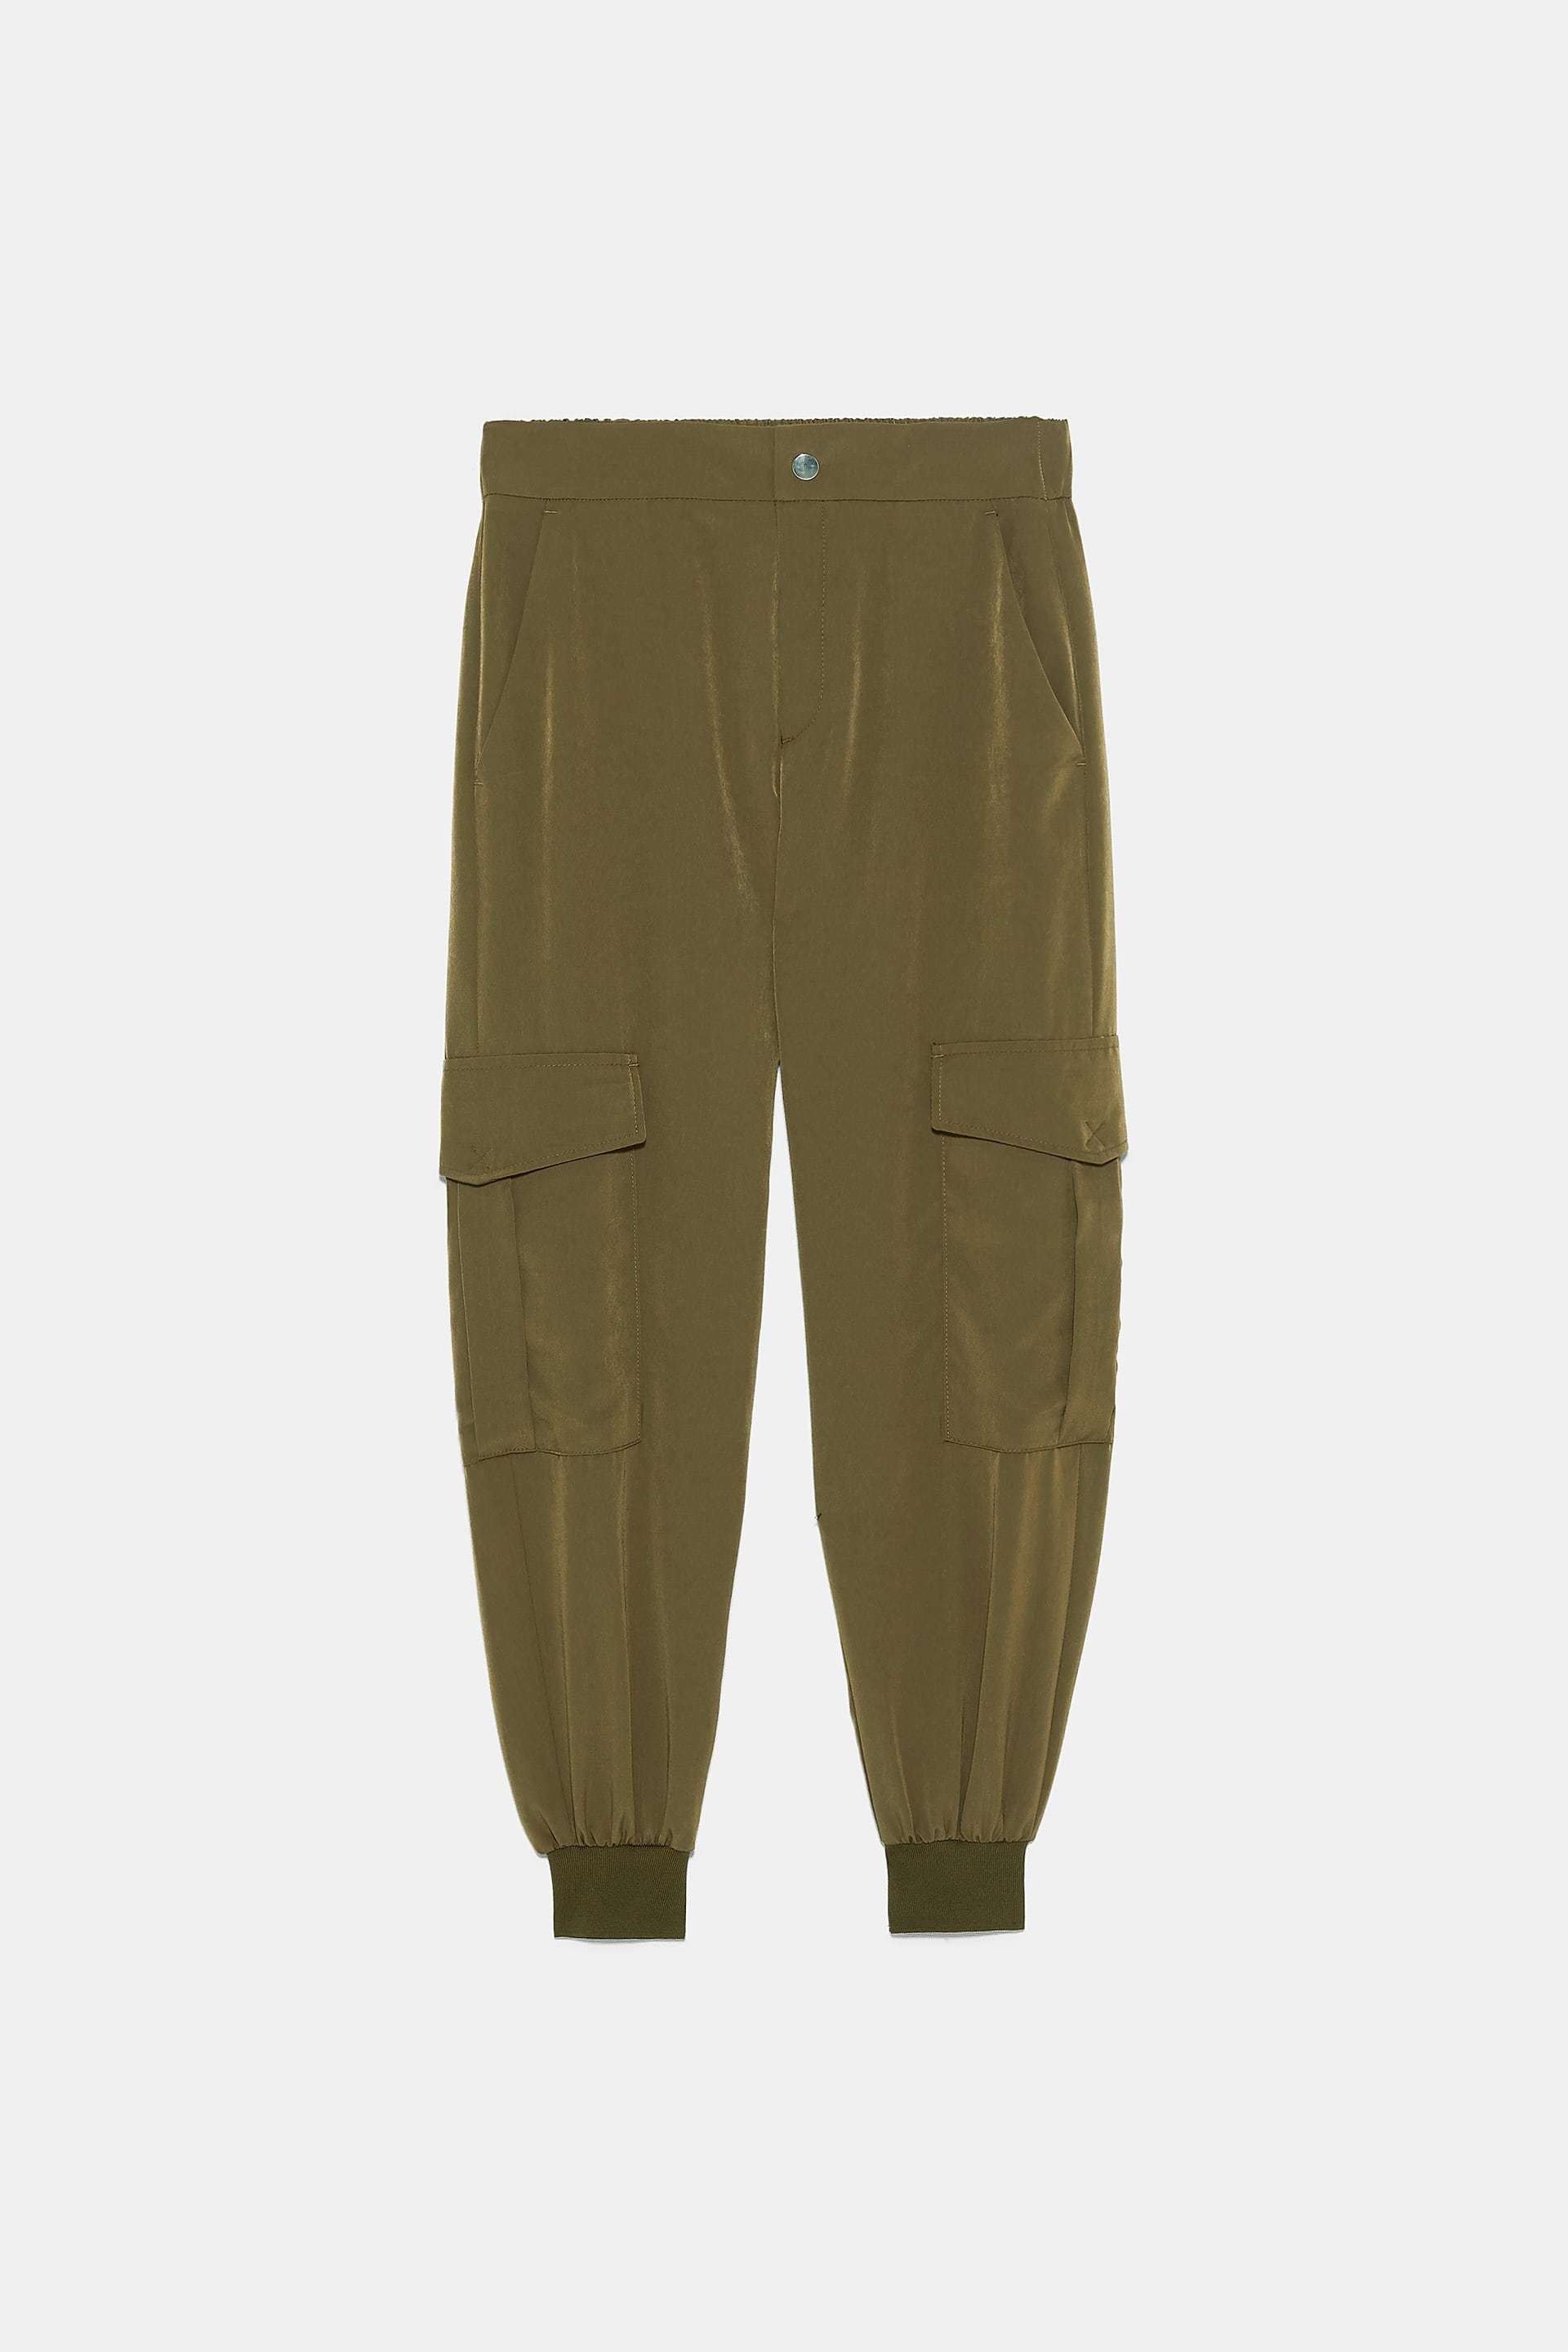 Pantalones cargo, de Zara (25,95 euros).